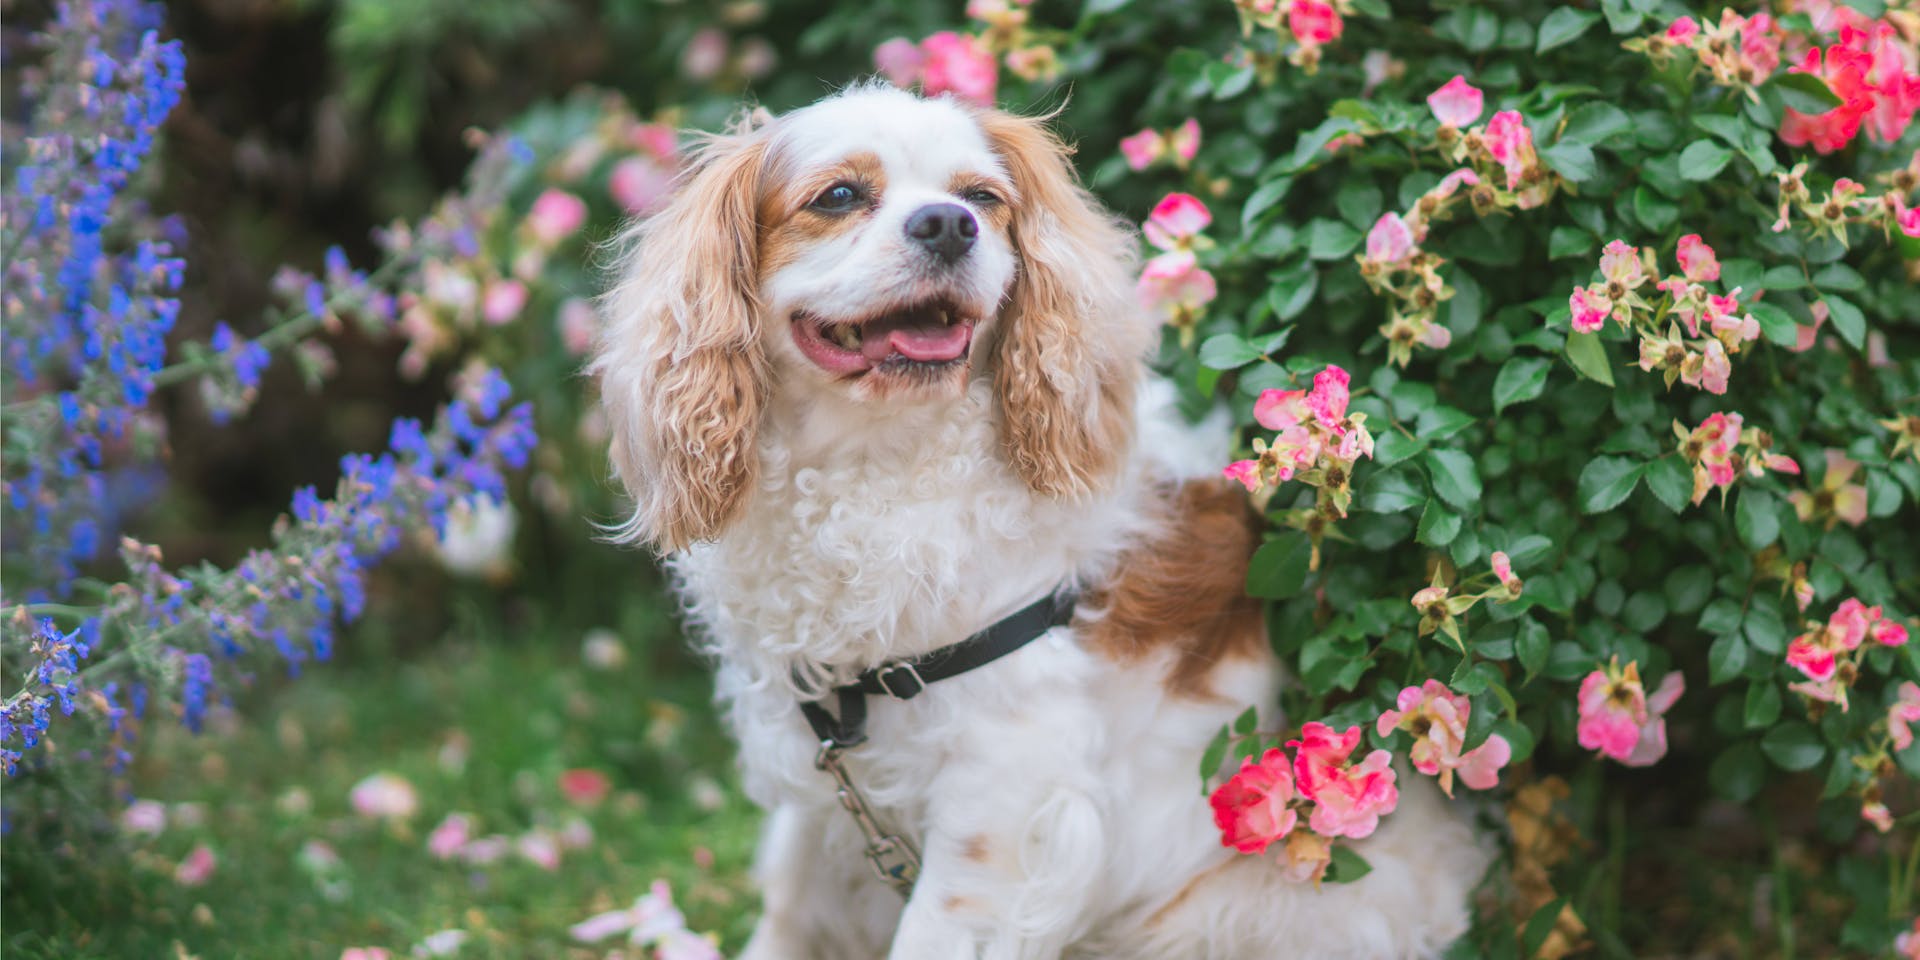 Dog in flower garden